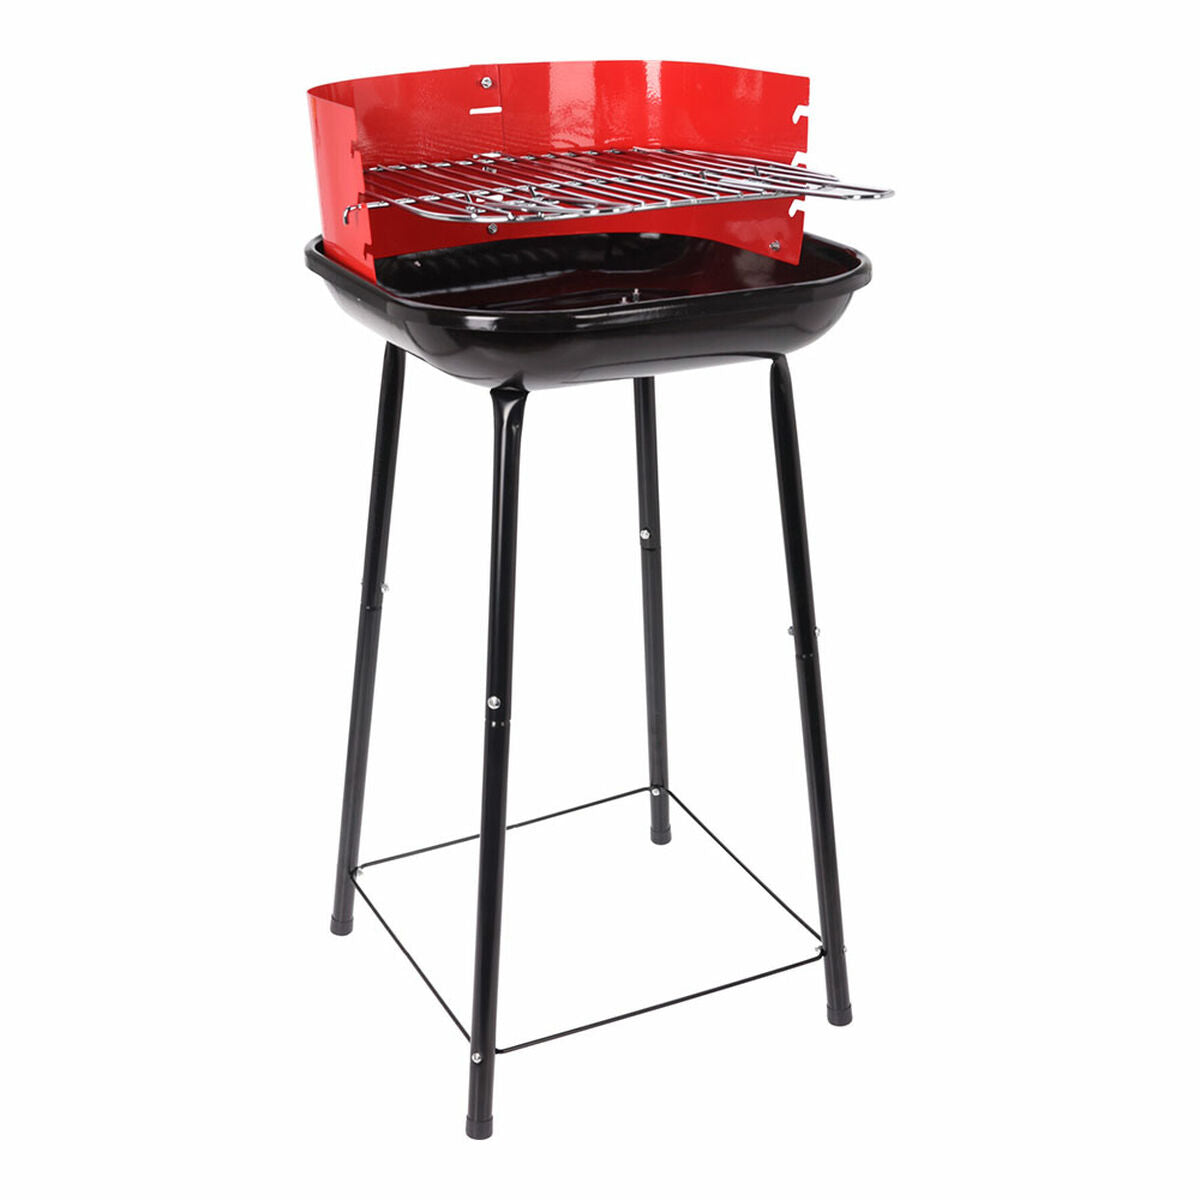 Houtskoolbarbecue met Poten Grill 41 x 41 x 74 cm Rood/Zwart